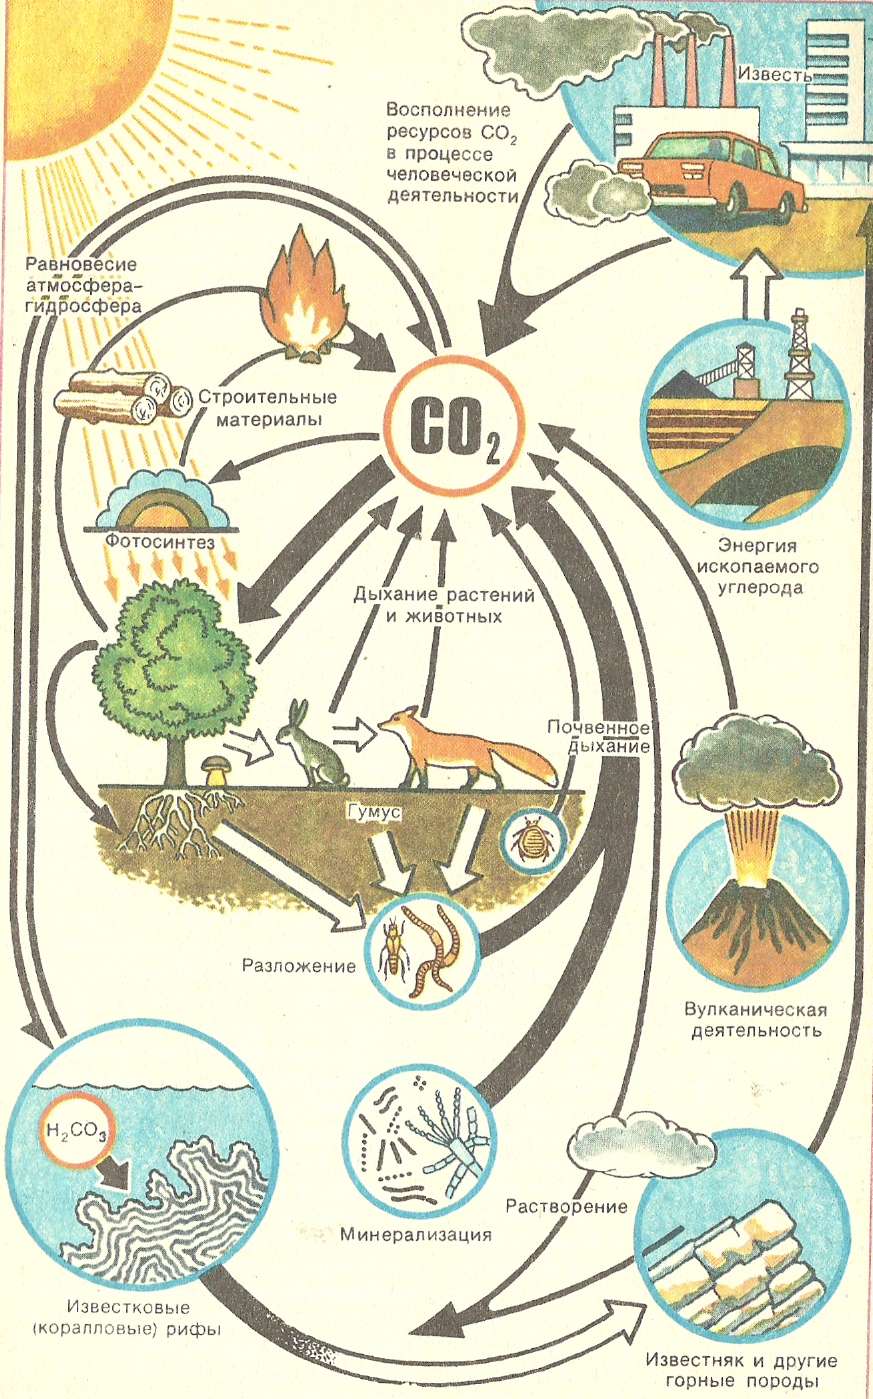 Этап круговорота углерода в биосфере